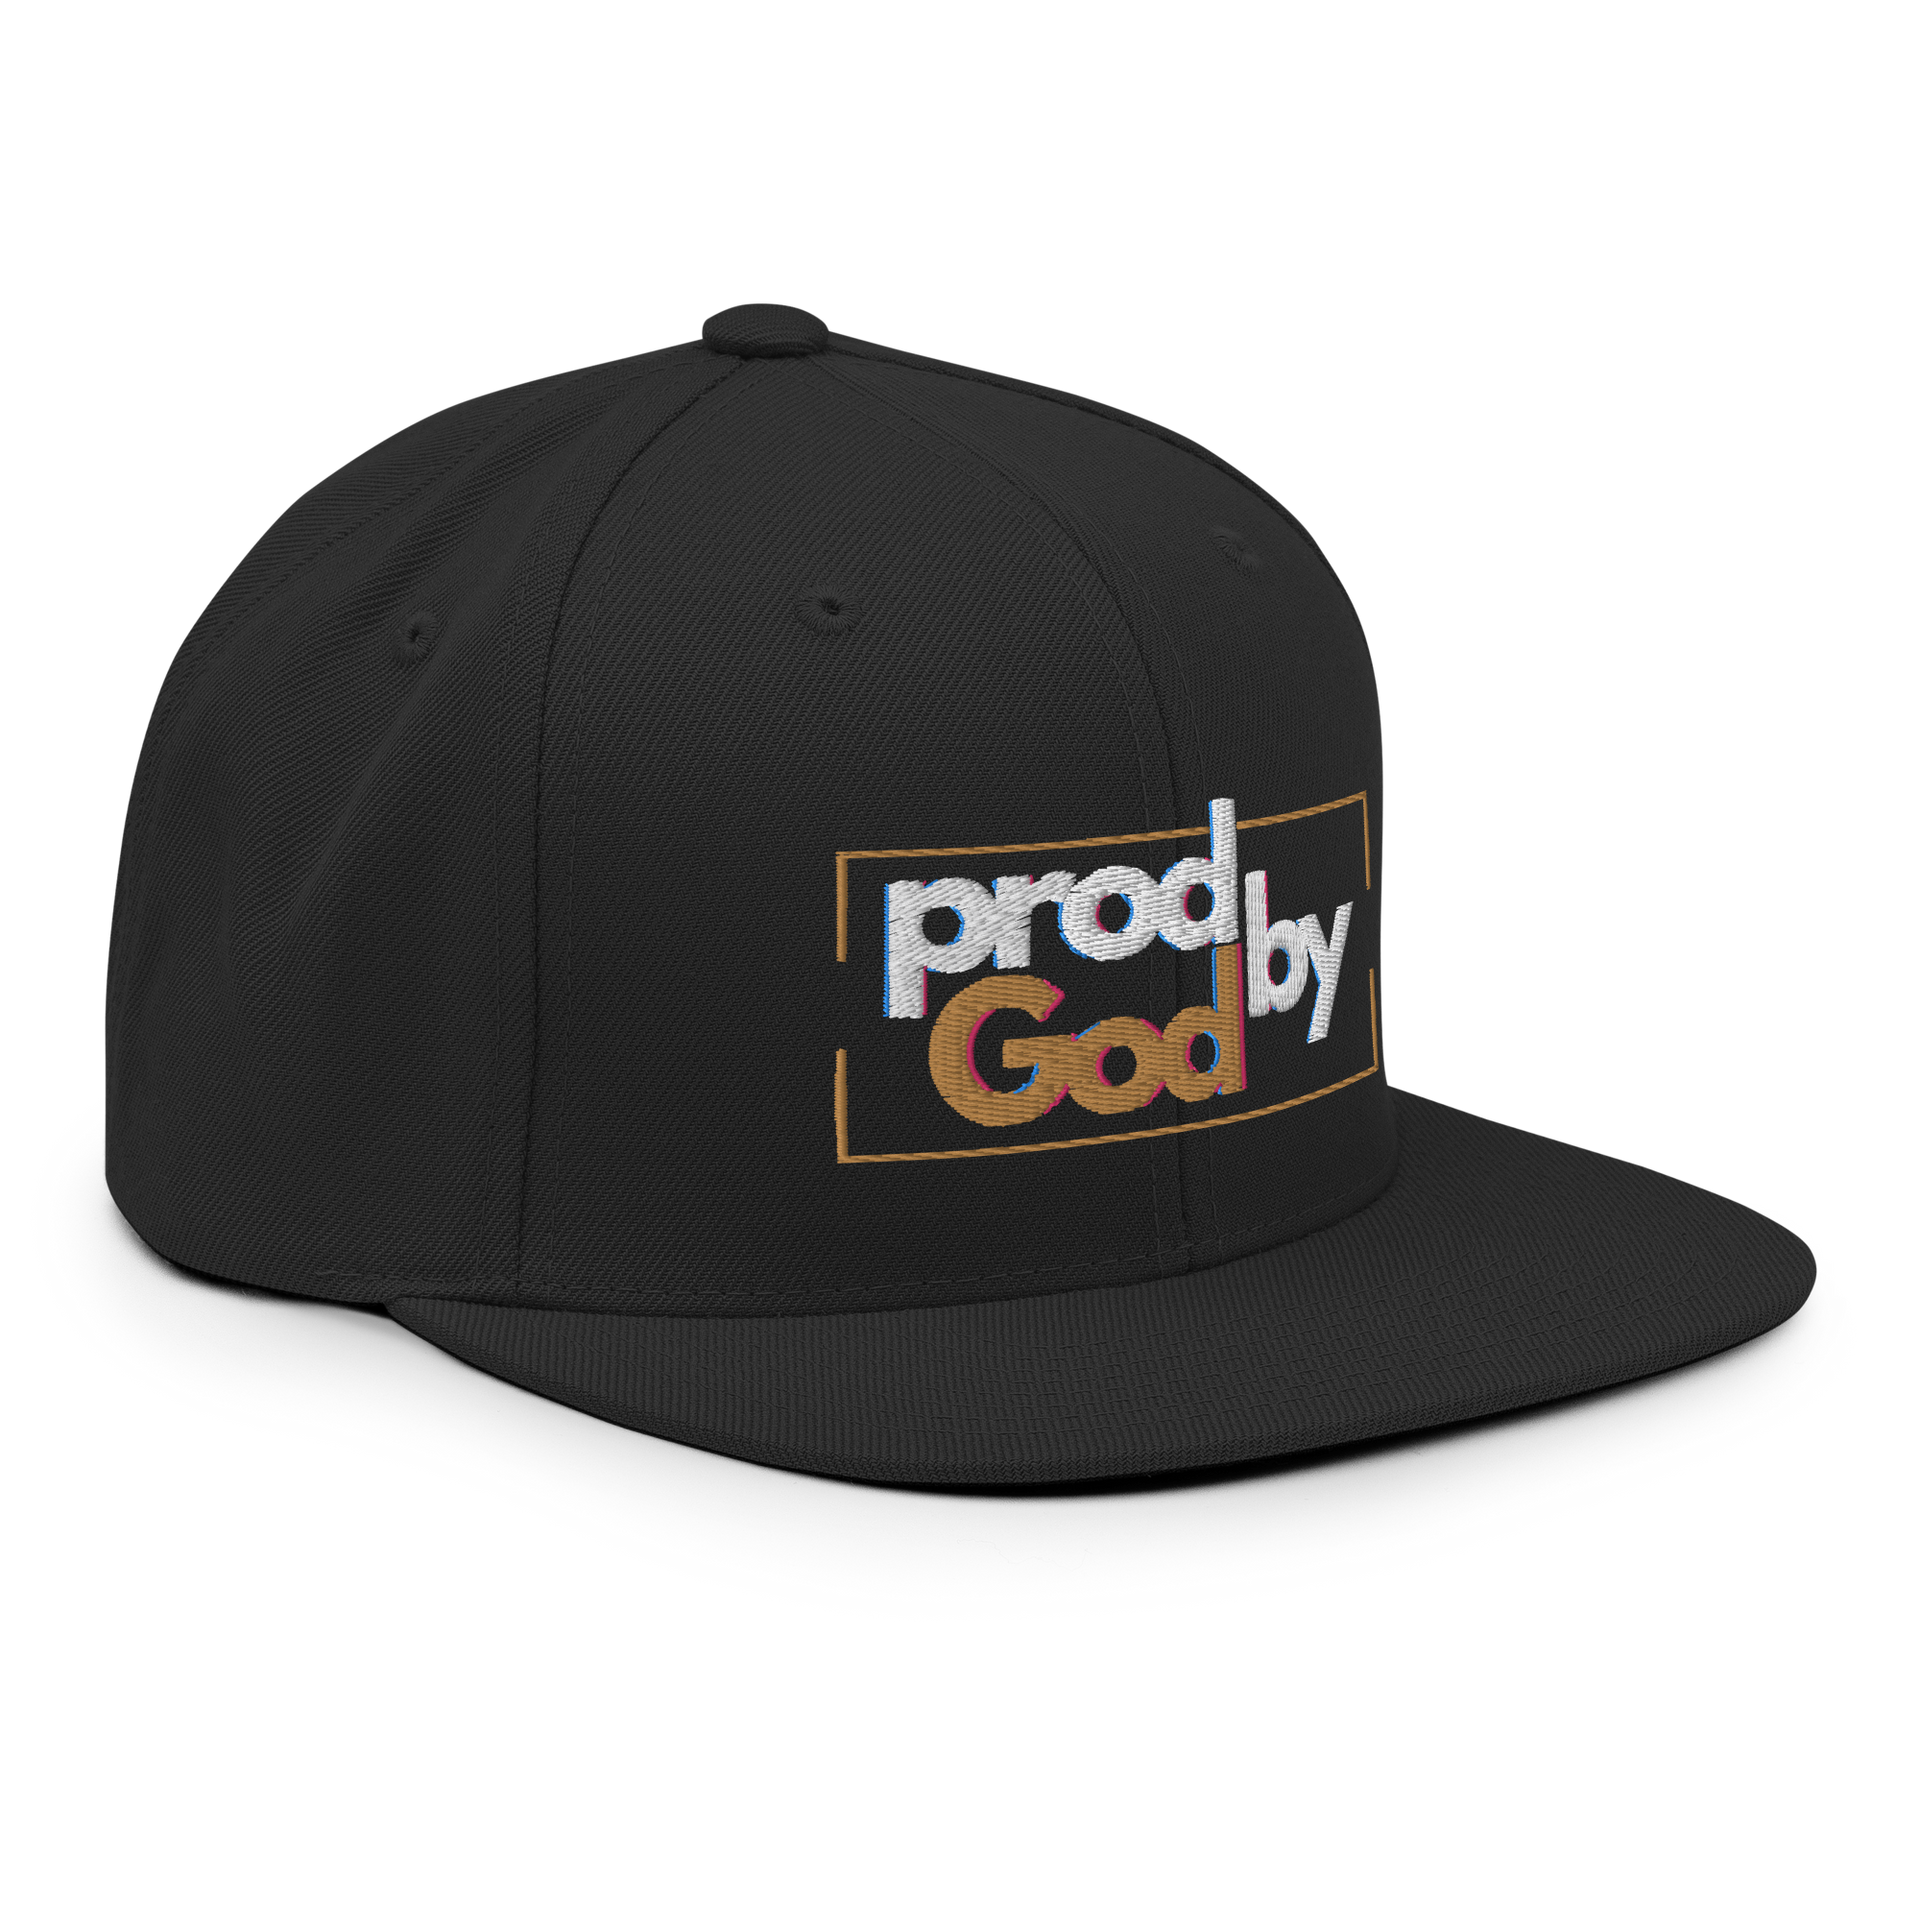 Prod By | “God” Snapback Hat